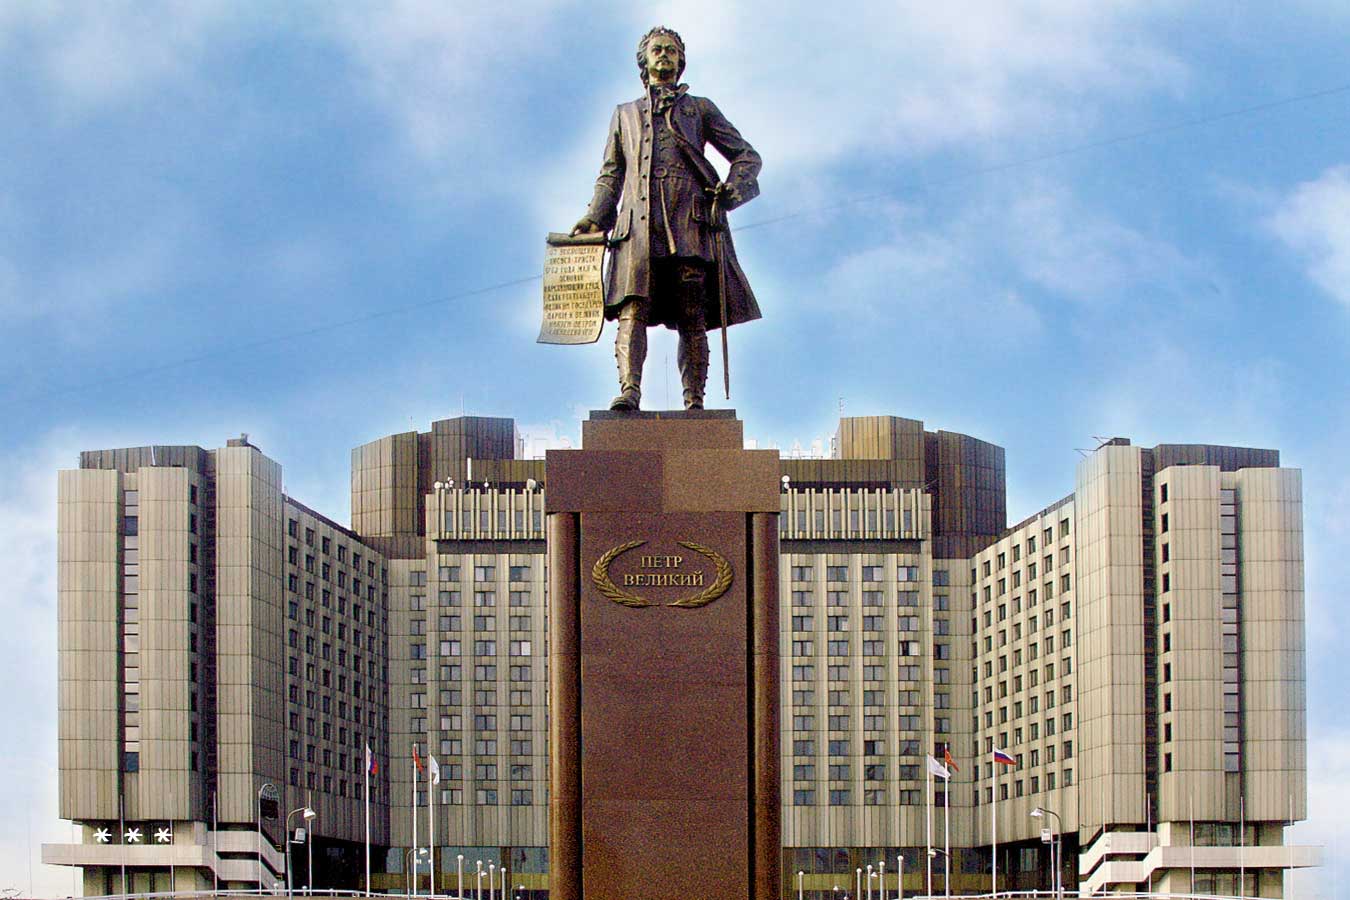  Памятник Петру от Церетели. Санкт-Петербург